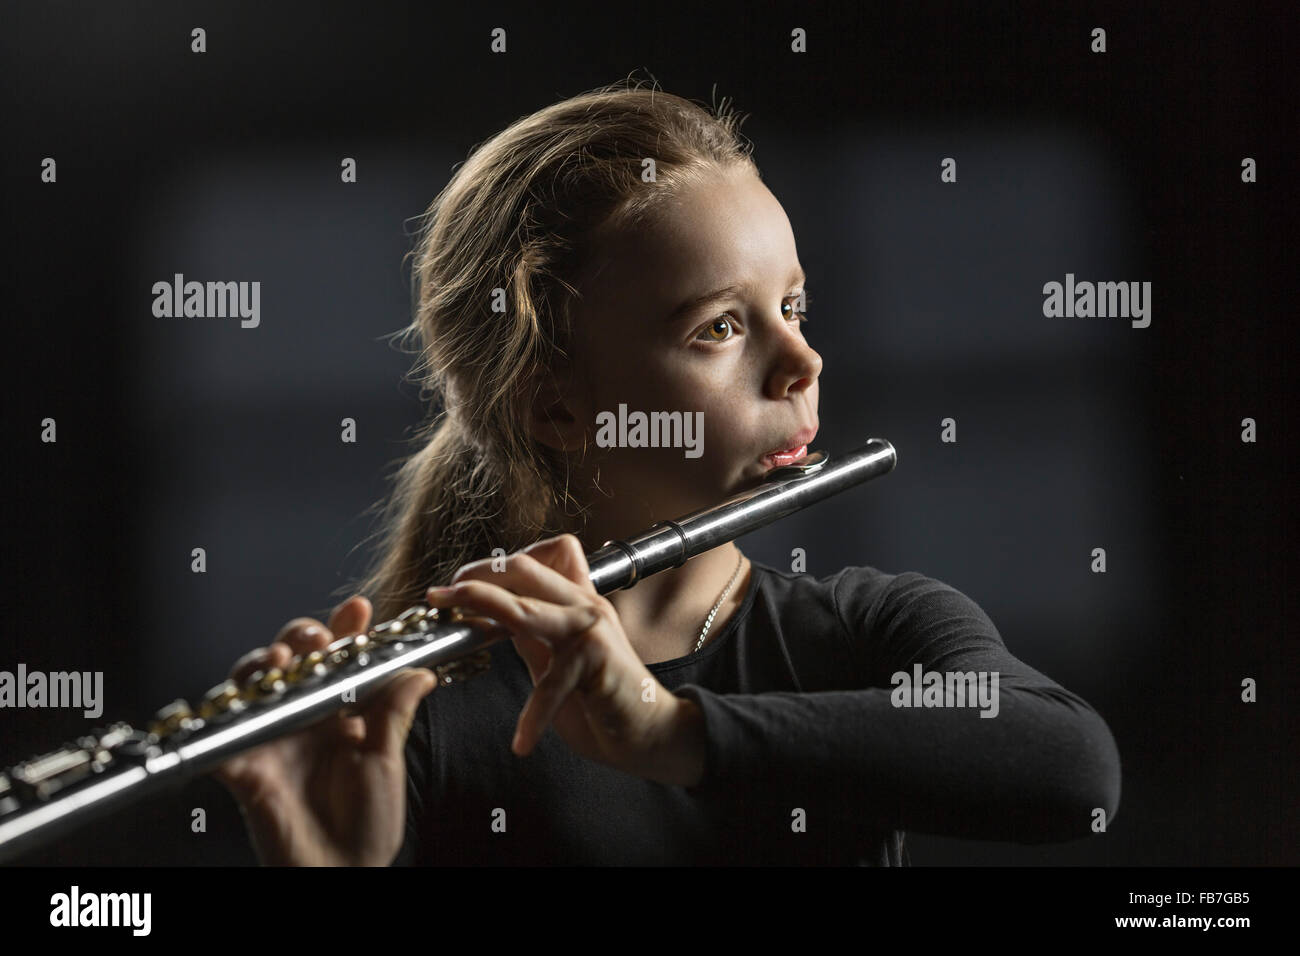 Girl playing flute sur fond noir Banque D'Images